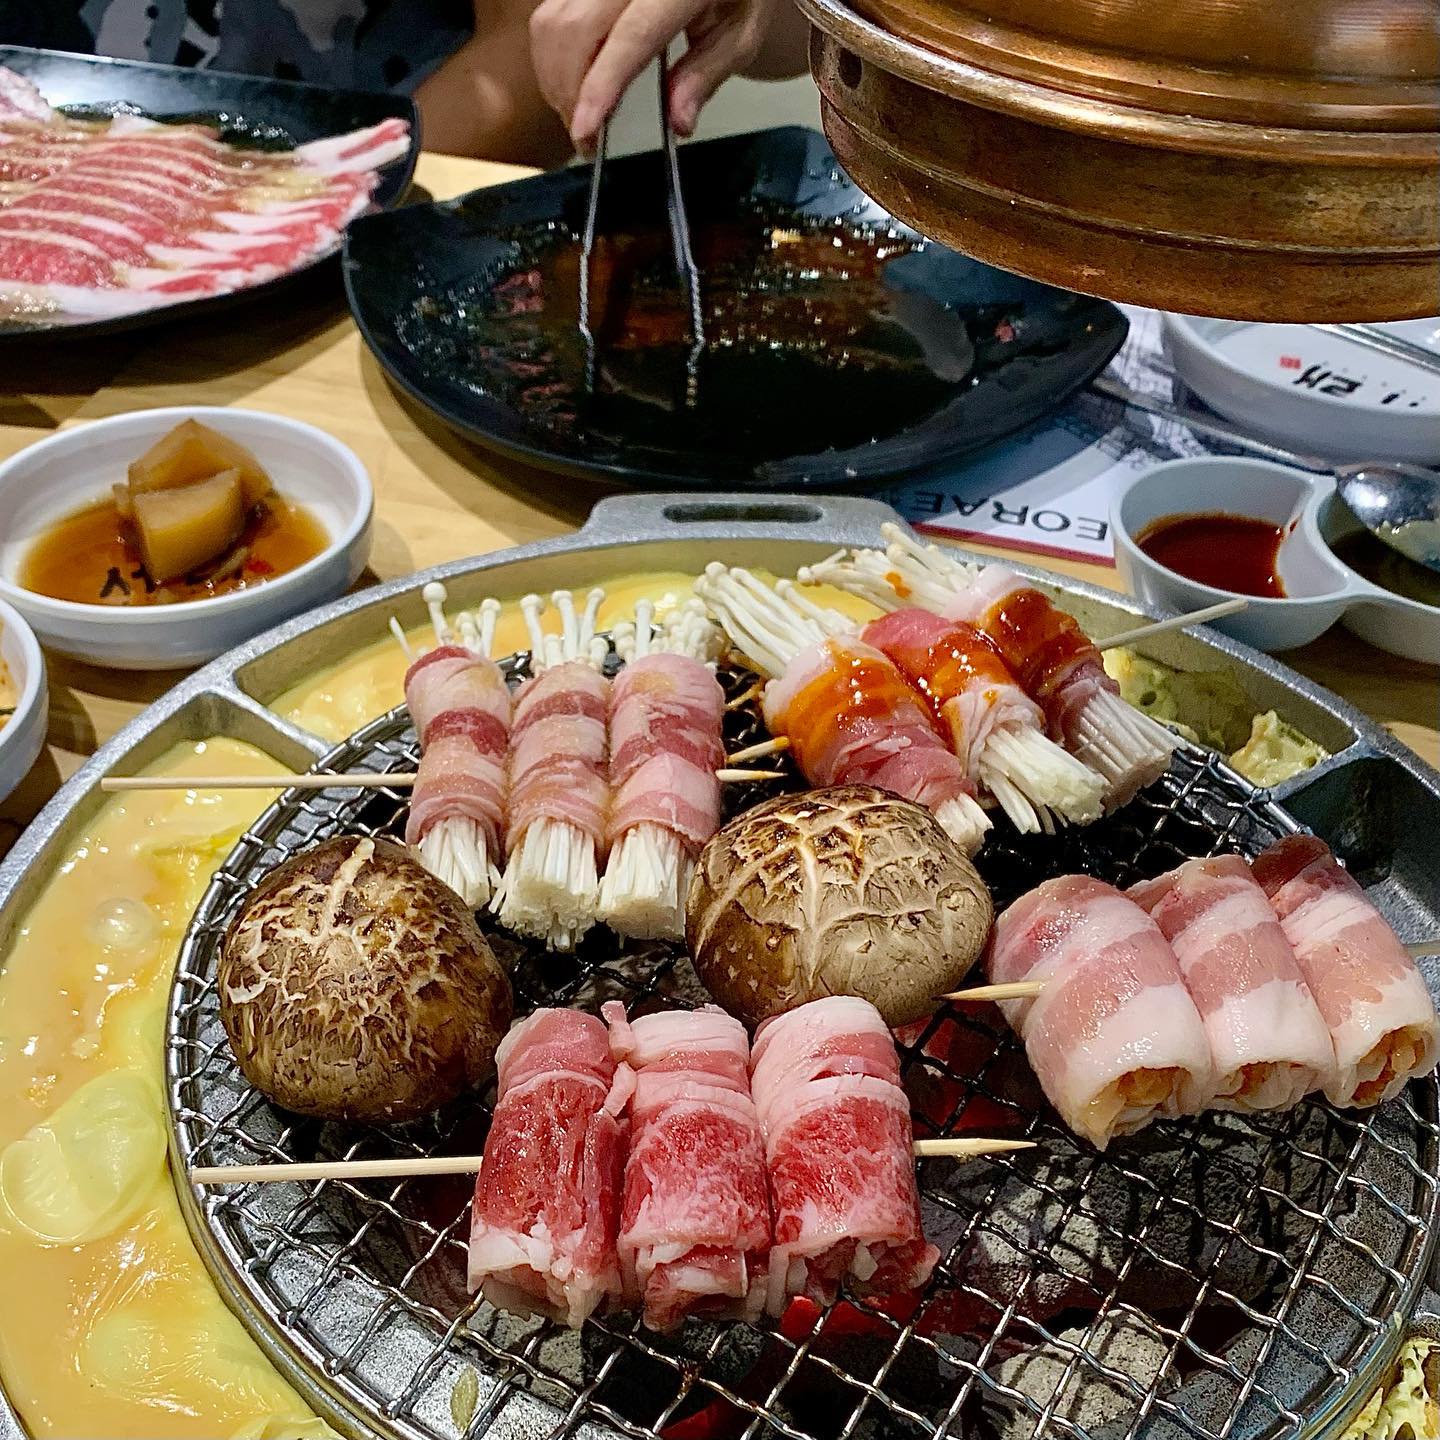 Seorae Korean BBQ skewers